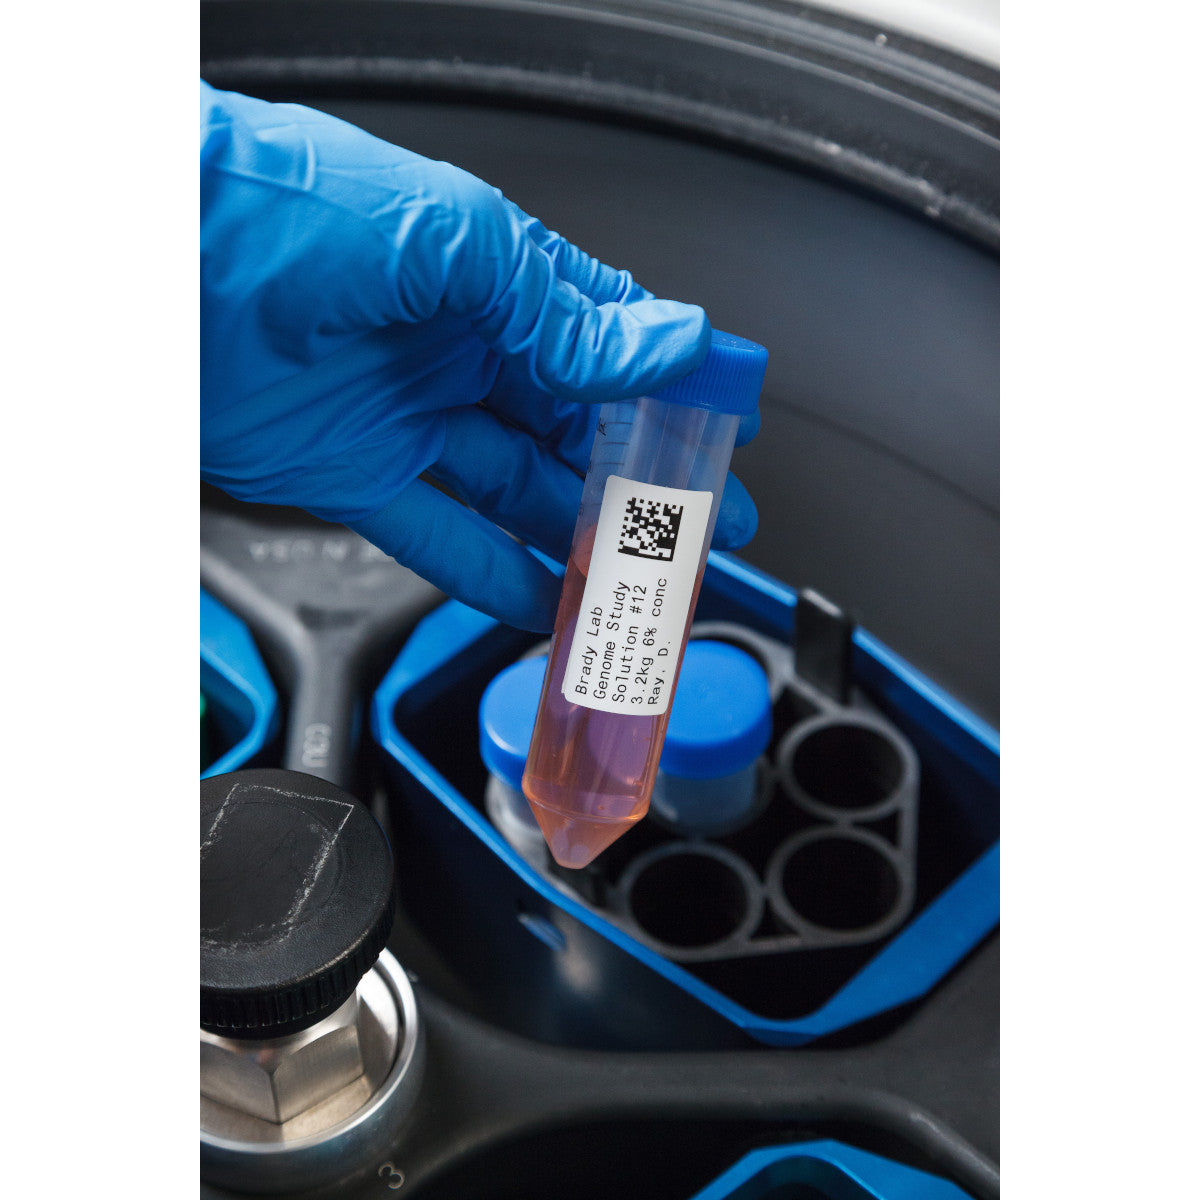 805914 - Etichette per laboratori in poliestere resistente a sostanze chimiche core 76 mm ROTOLO DA 3000 ETICHETTE